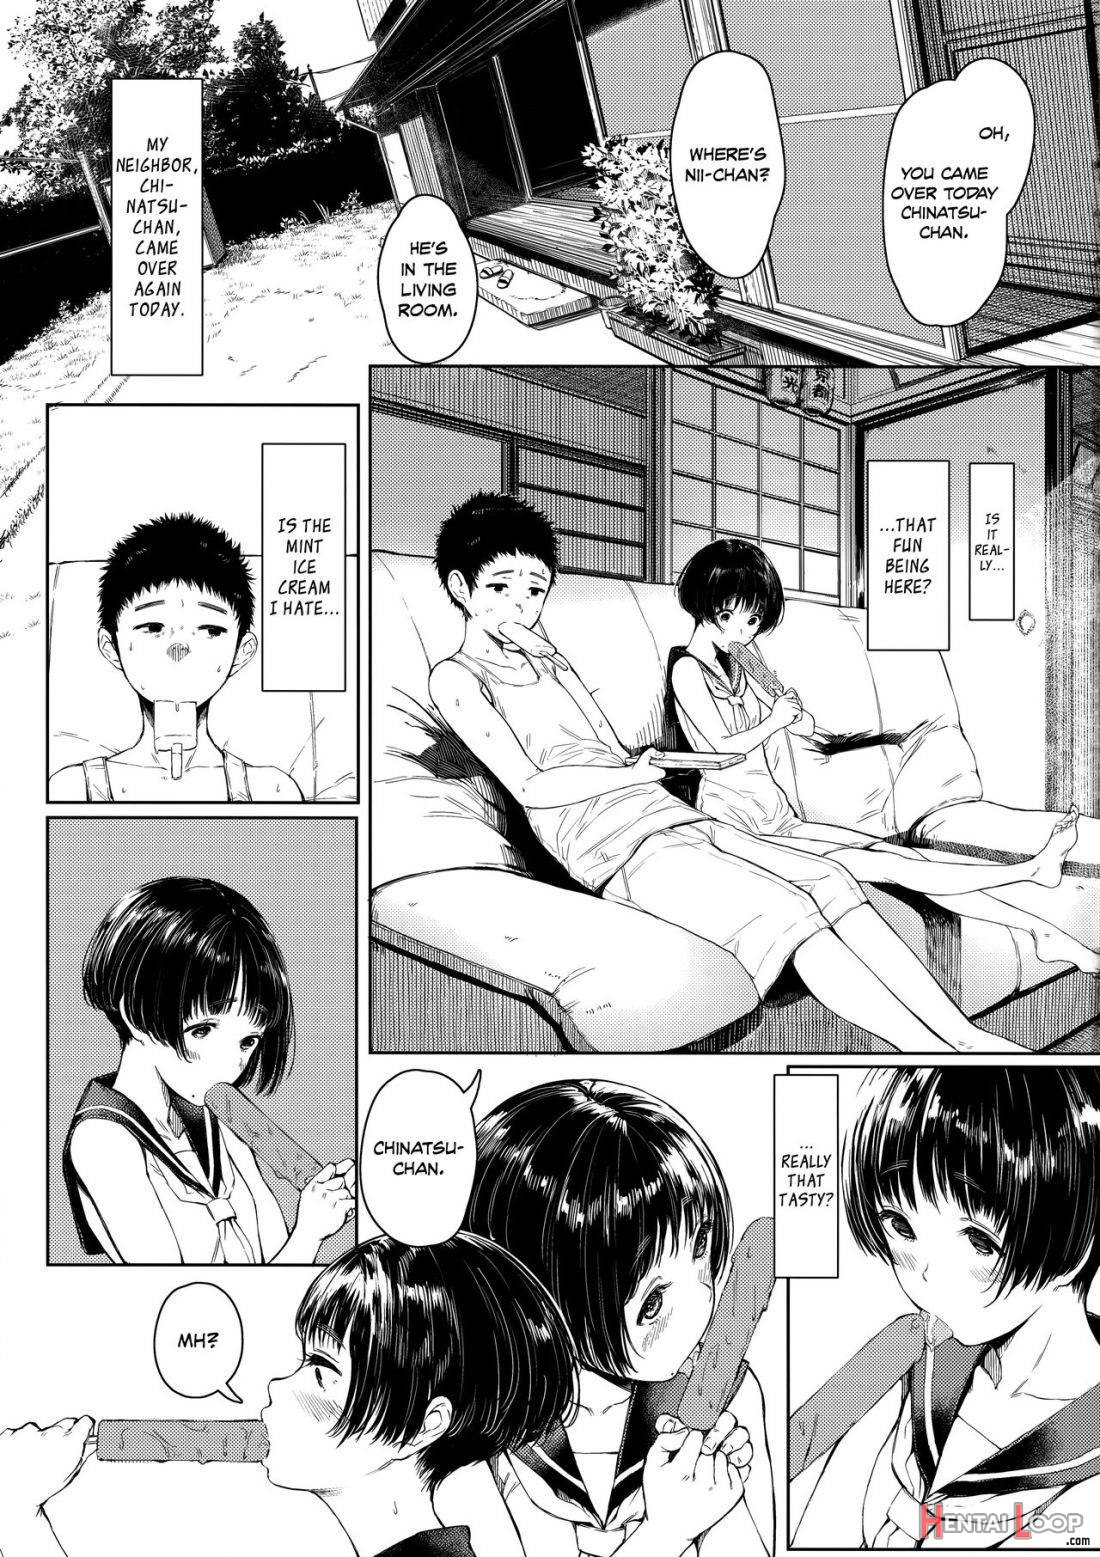 Tonari No Chinatsu-chan R 02 page 2